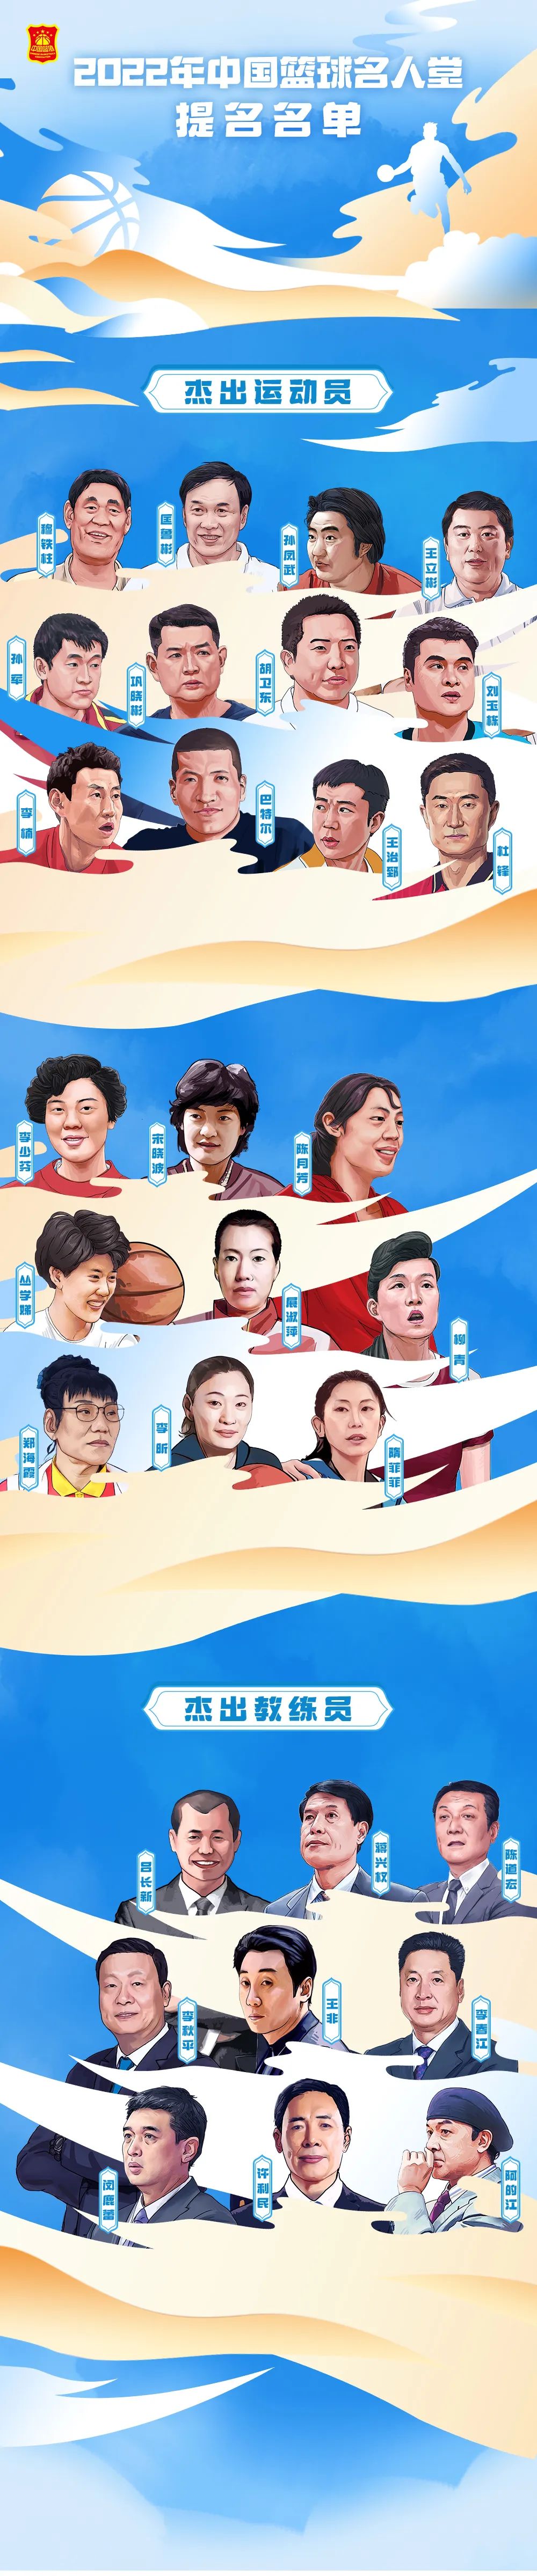 2022年中国篮球名人堂30人提名名单公布